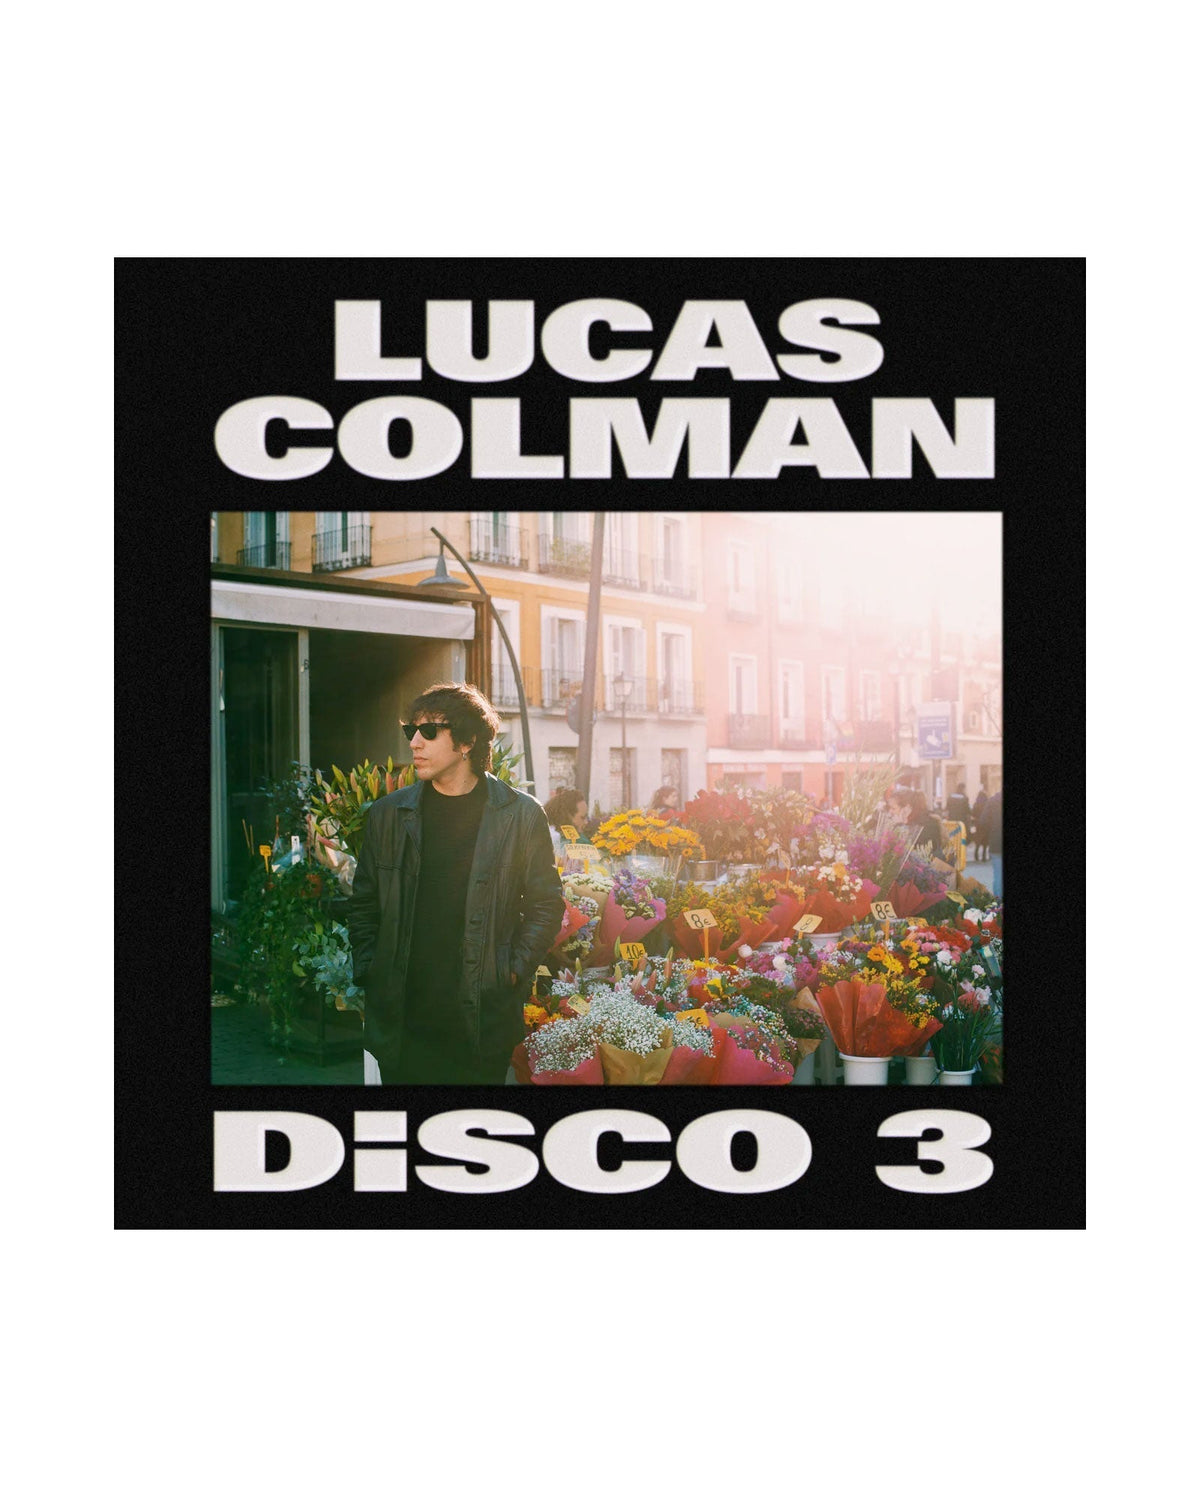 Lucas Colman - LP Vinilo + CD Firmado "Disco 3" - D2fy · Rocktud - Metales Preciosos